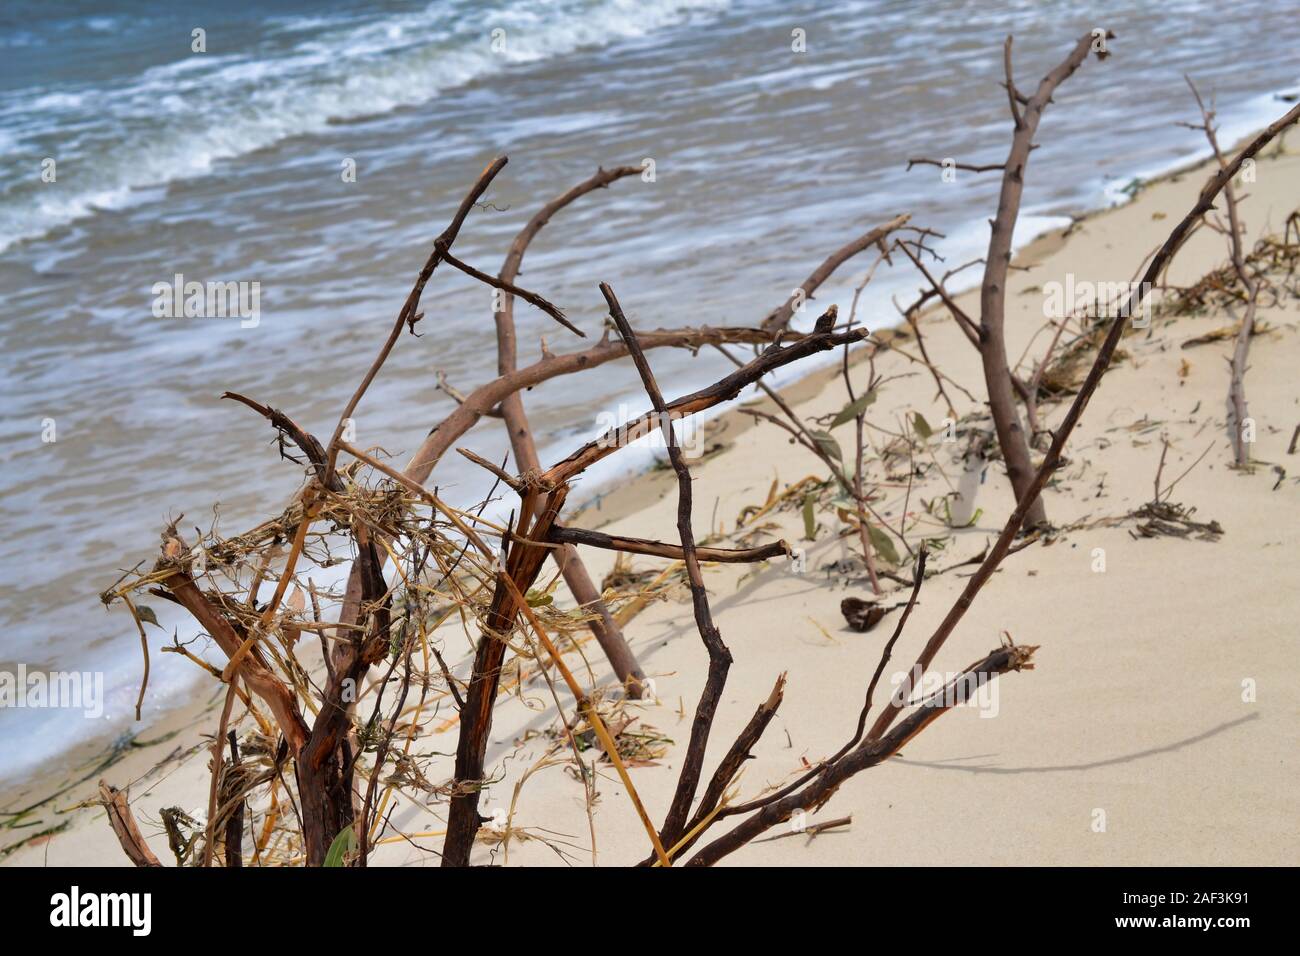 La végétation des dunes de sable mort. La végétation côtière jouent un rôle important dans le maintien de l'intégrité de nos systèmes de dunes Banque D'Images